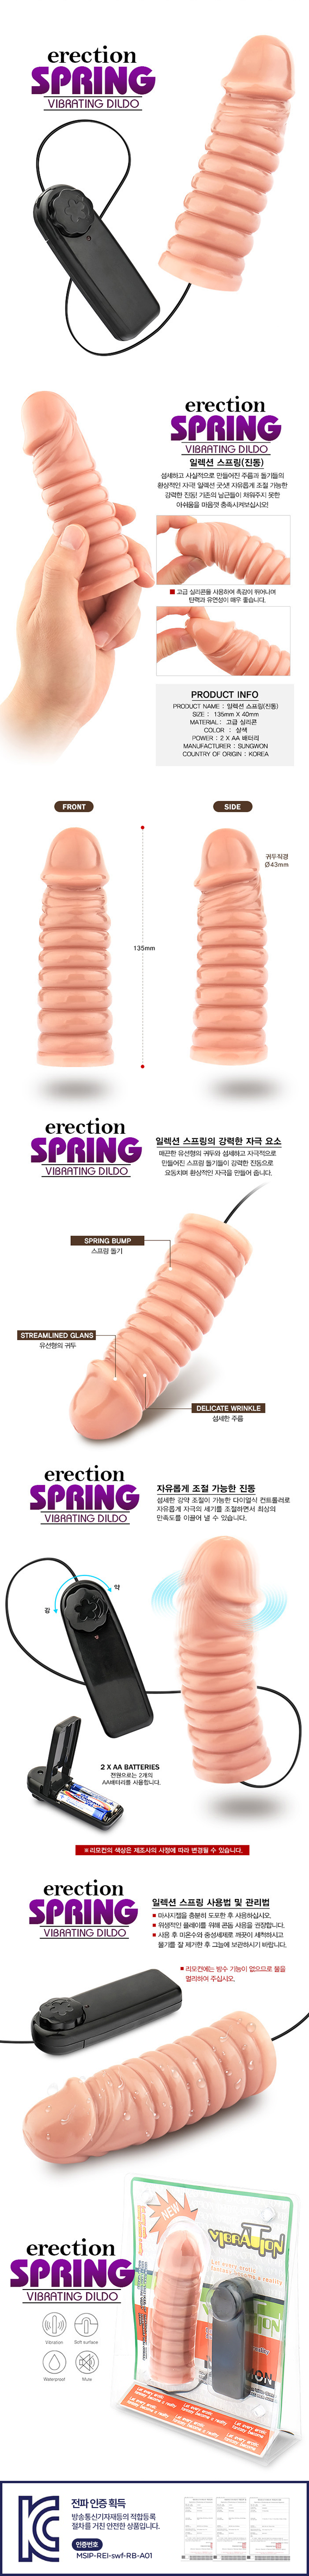 [고급 실리콘+진동] 일렉션 스프링(Erection Spring Vibrating Dildo) [NR]